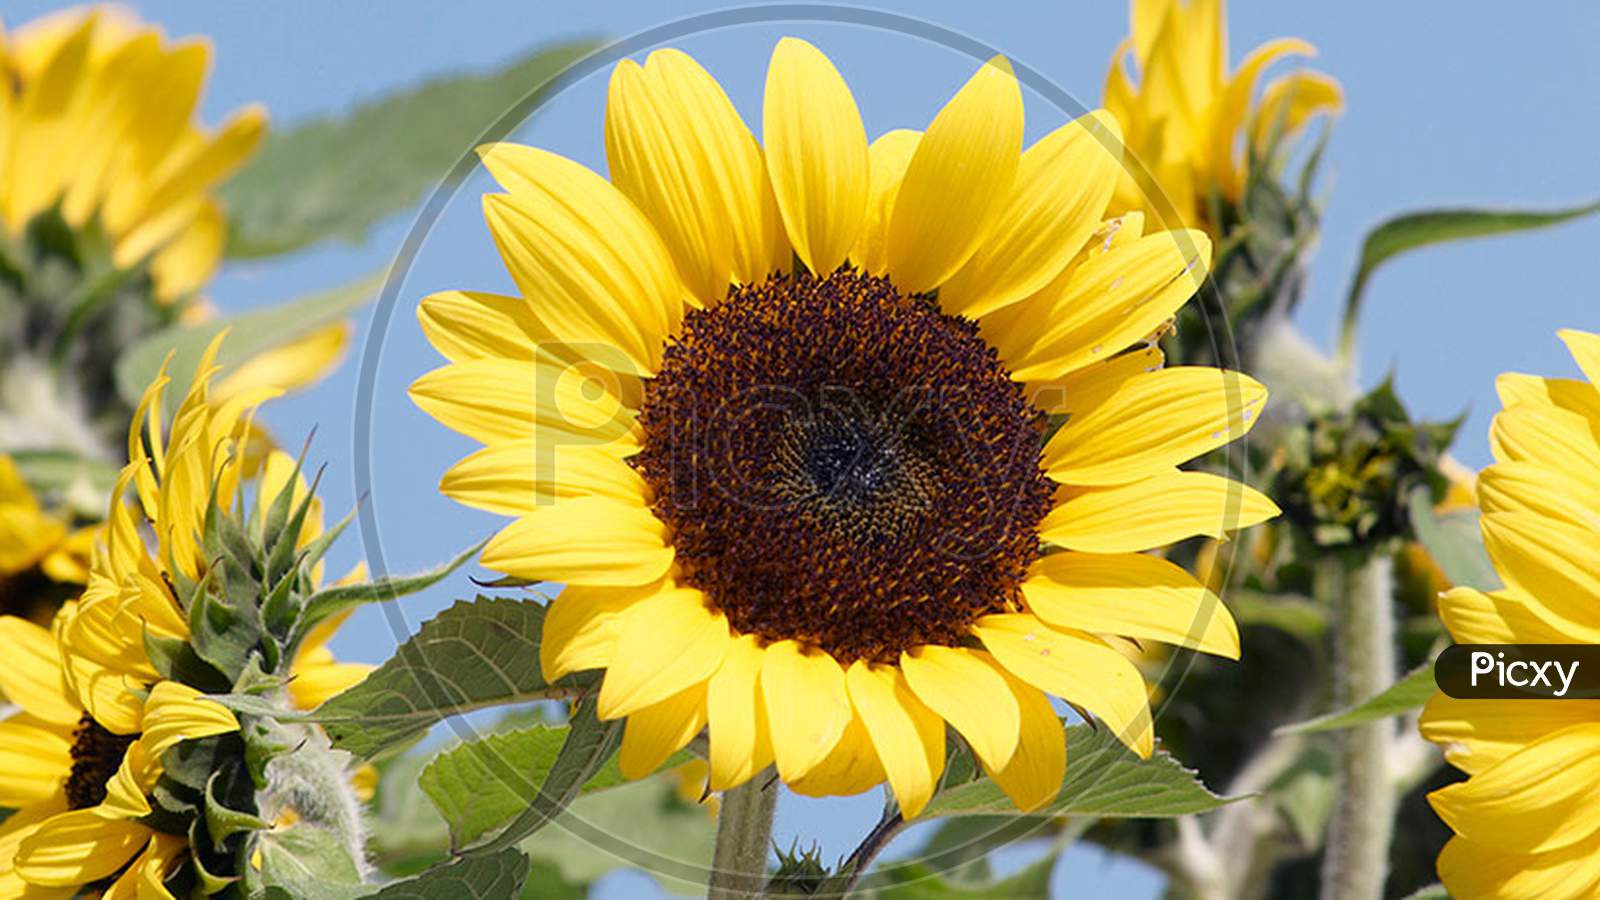 Sunflower to grow in our garden- garden gate